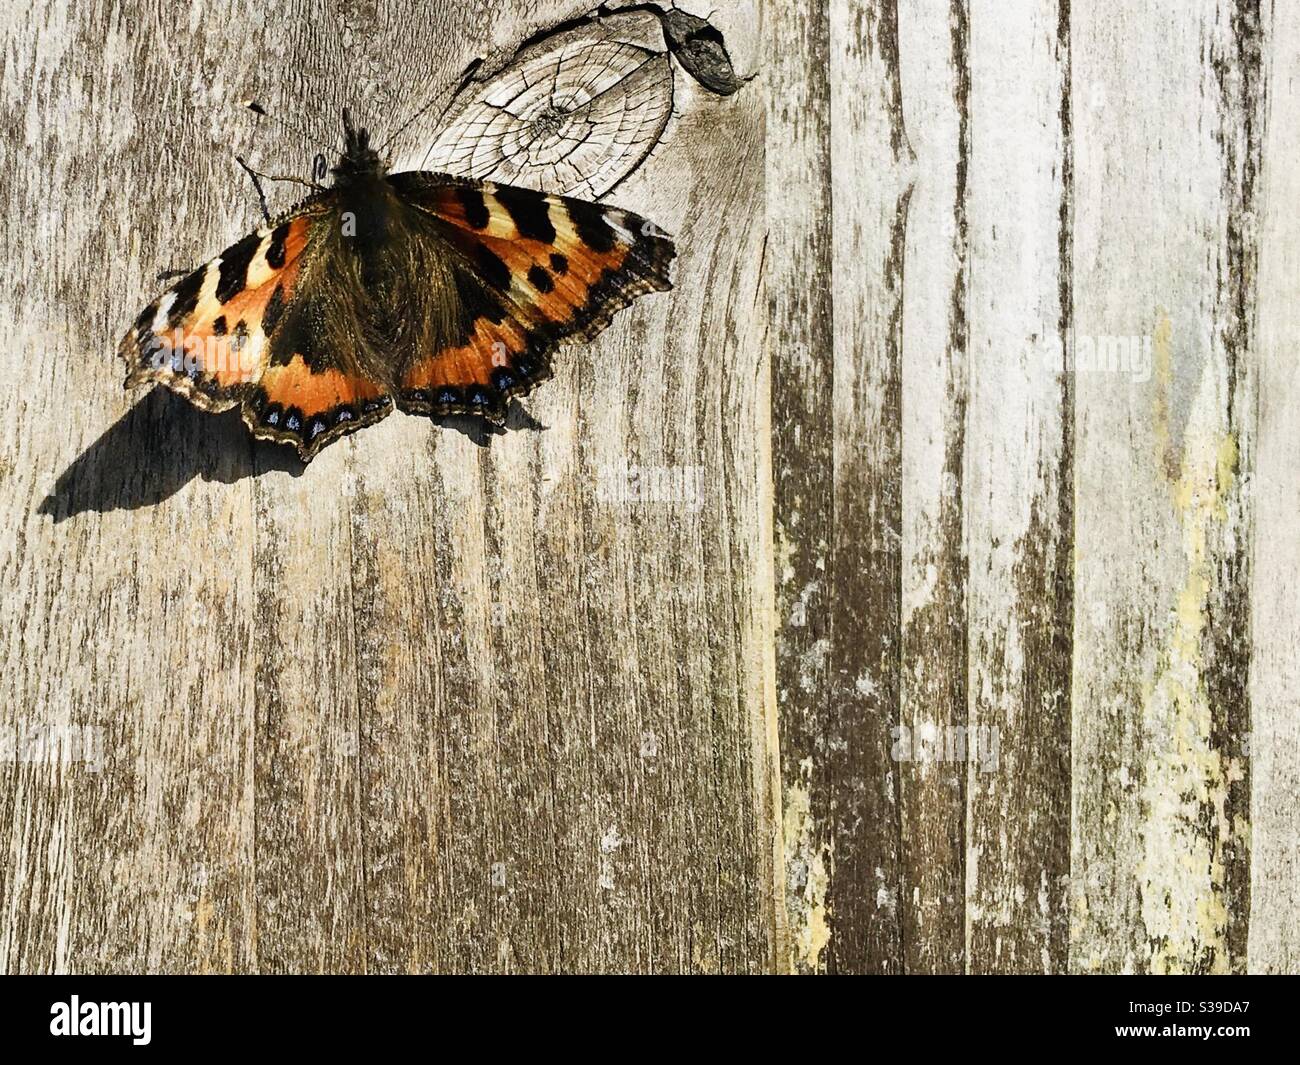 Magnifique papillon tortoiseshell sur une clôture de jardin rustique en bois de merde. Papillon à gauche avec espace de copie pour le texte en dessous et à droite Banque D'Images